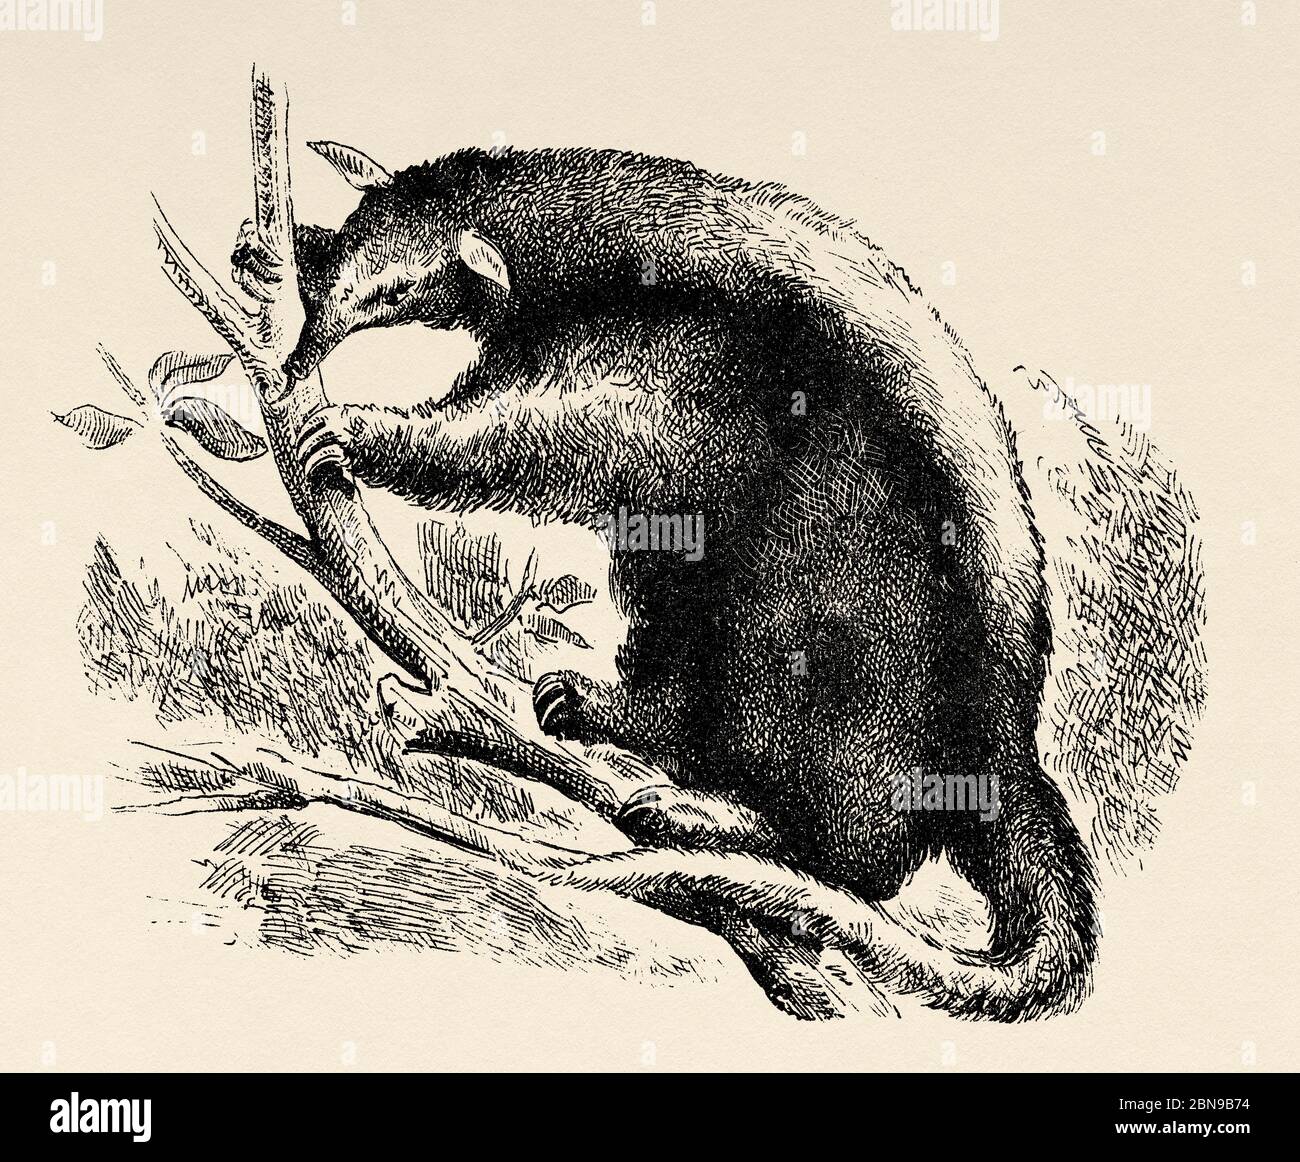 El Oso mayor o el anteador amazónico (Tamandua tetradactyla) especie de tamandua de América del Sur. Antiguo grabado animal ilustración siglo 19 Foto de stock